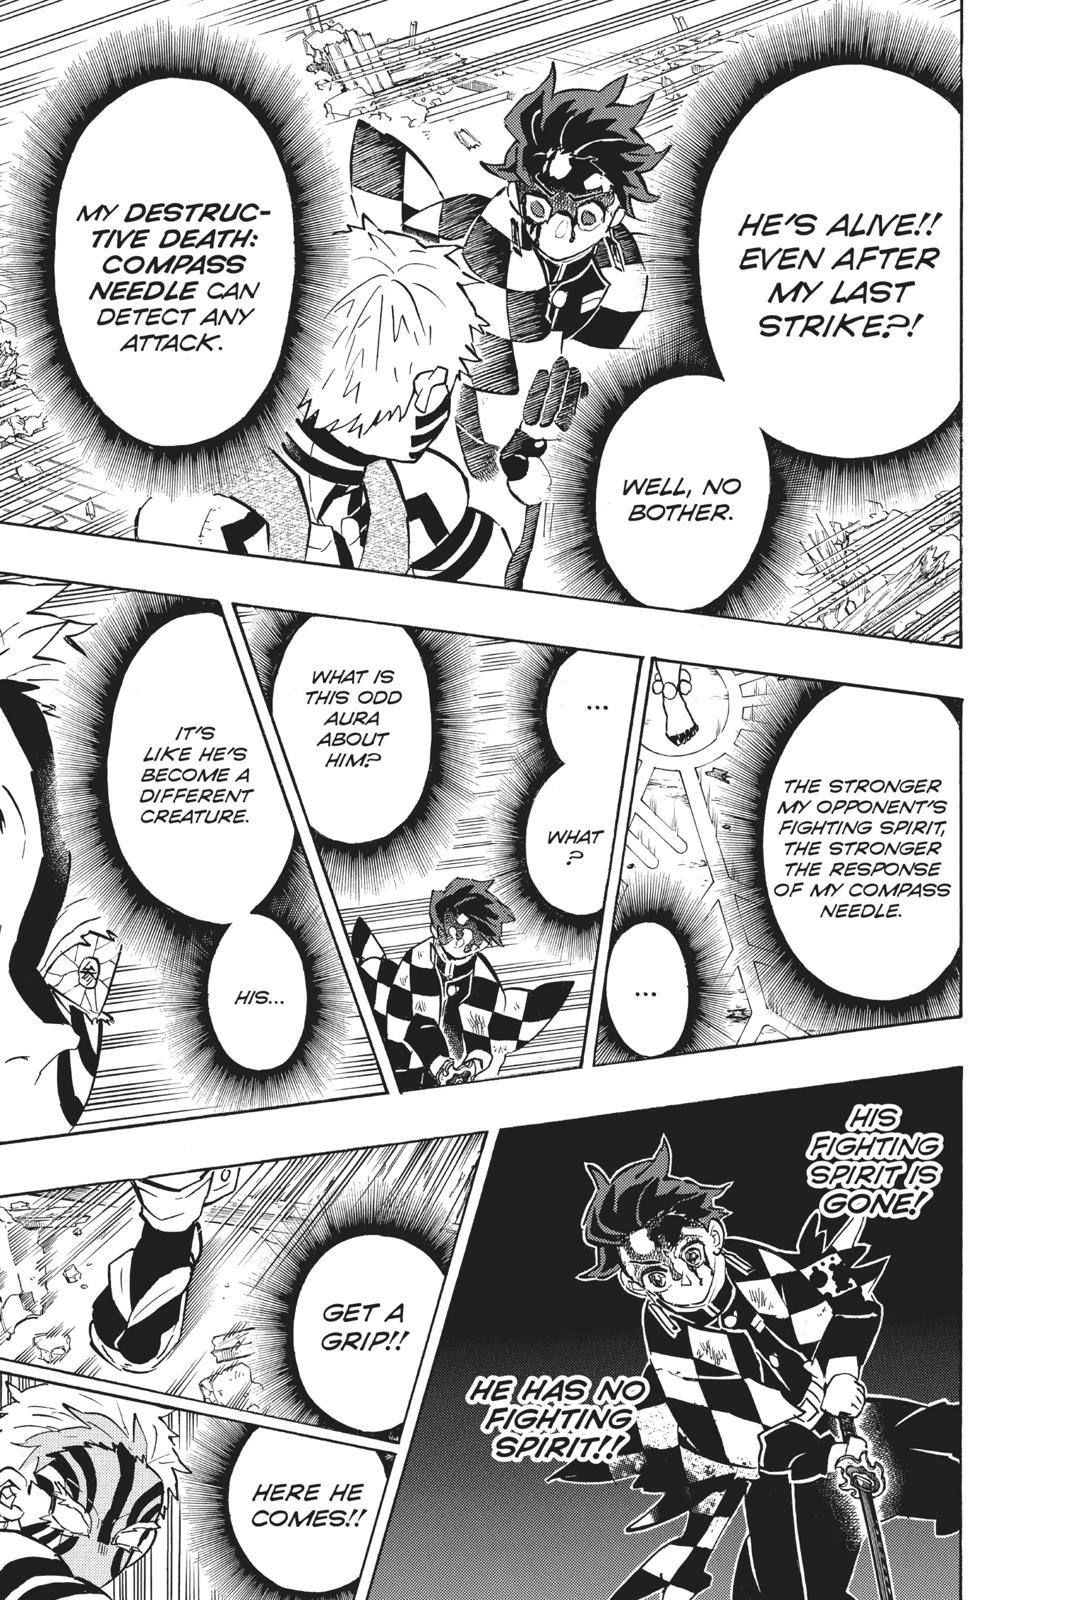 Demon Slayer Manga Manga Chapter - 152 - image 15